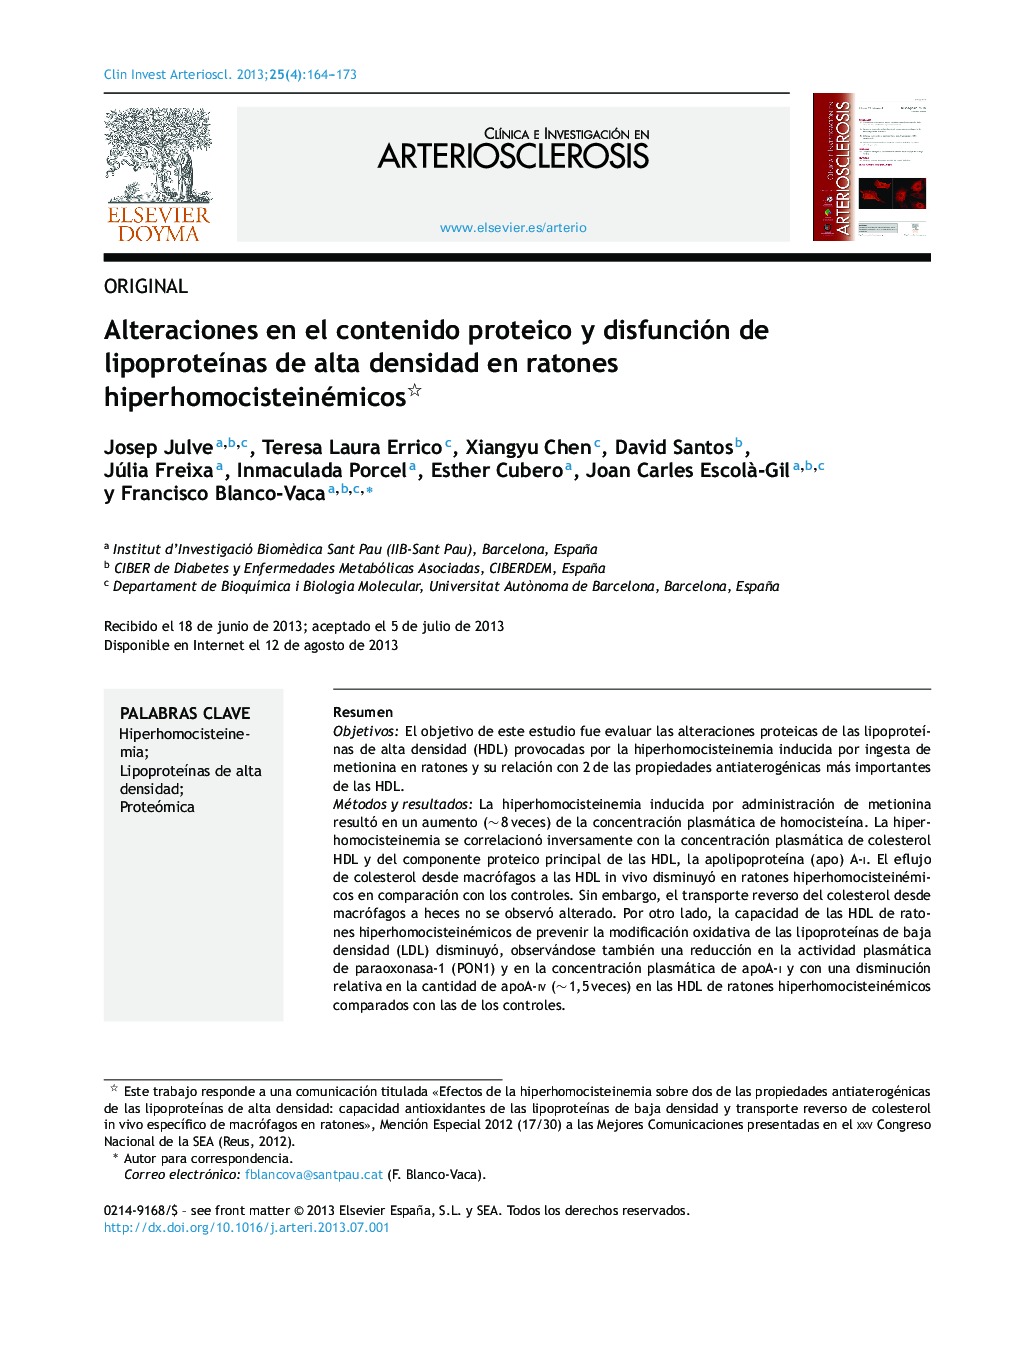 Alteraciones en el contenido proteico y disfunción de lipoproteÃ­nas de alta densidad en ratones hiperhomocisteinémicos